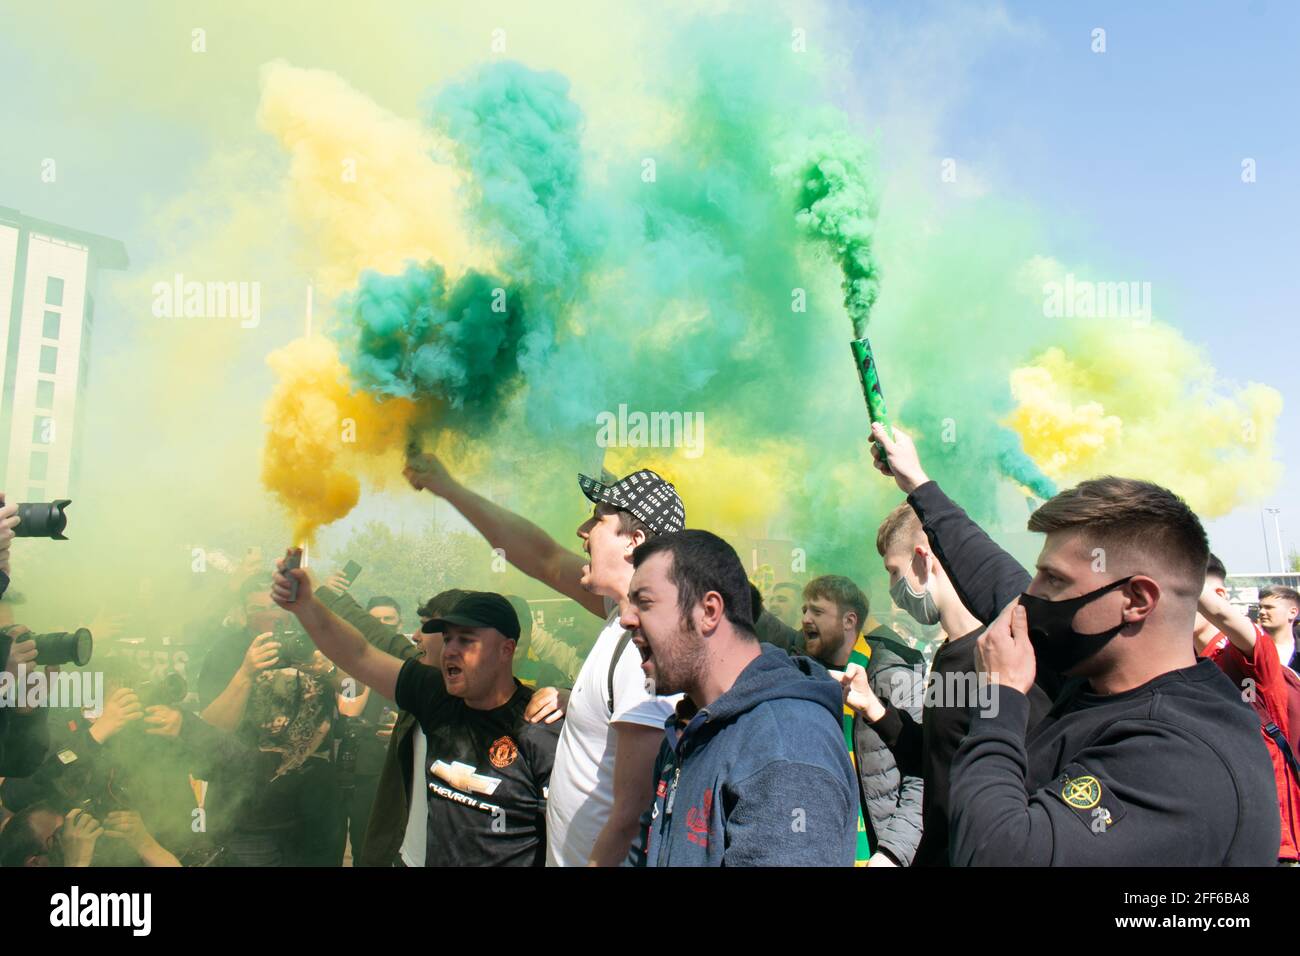 Protestation contre Glazer sur le terrain de football d'Old Trafford. Les supporters qui tiennent le vert et l'or fument. Stade Manchester United, Royaume-Uni. Banque D'Images